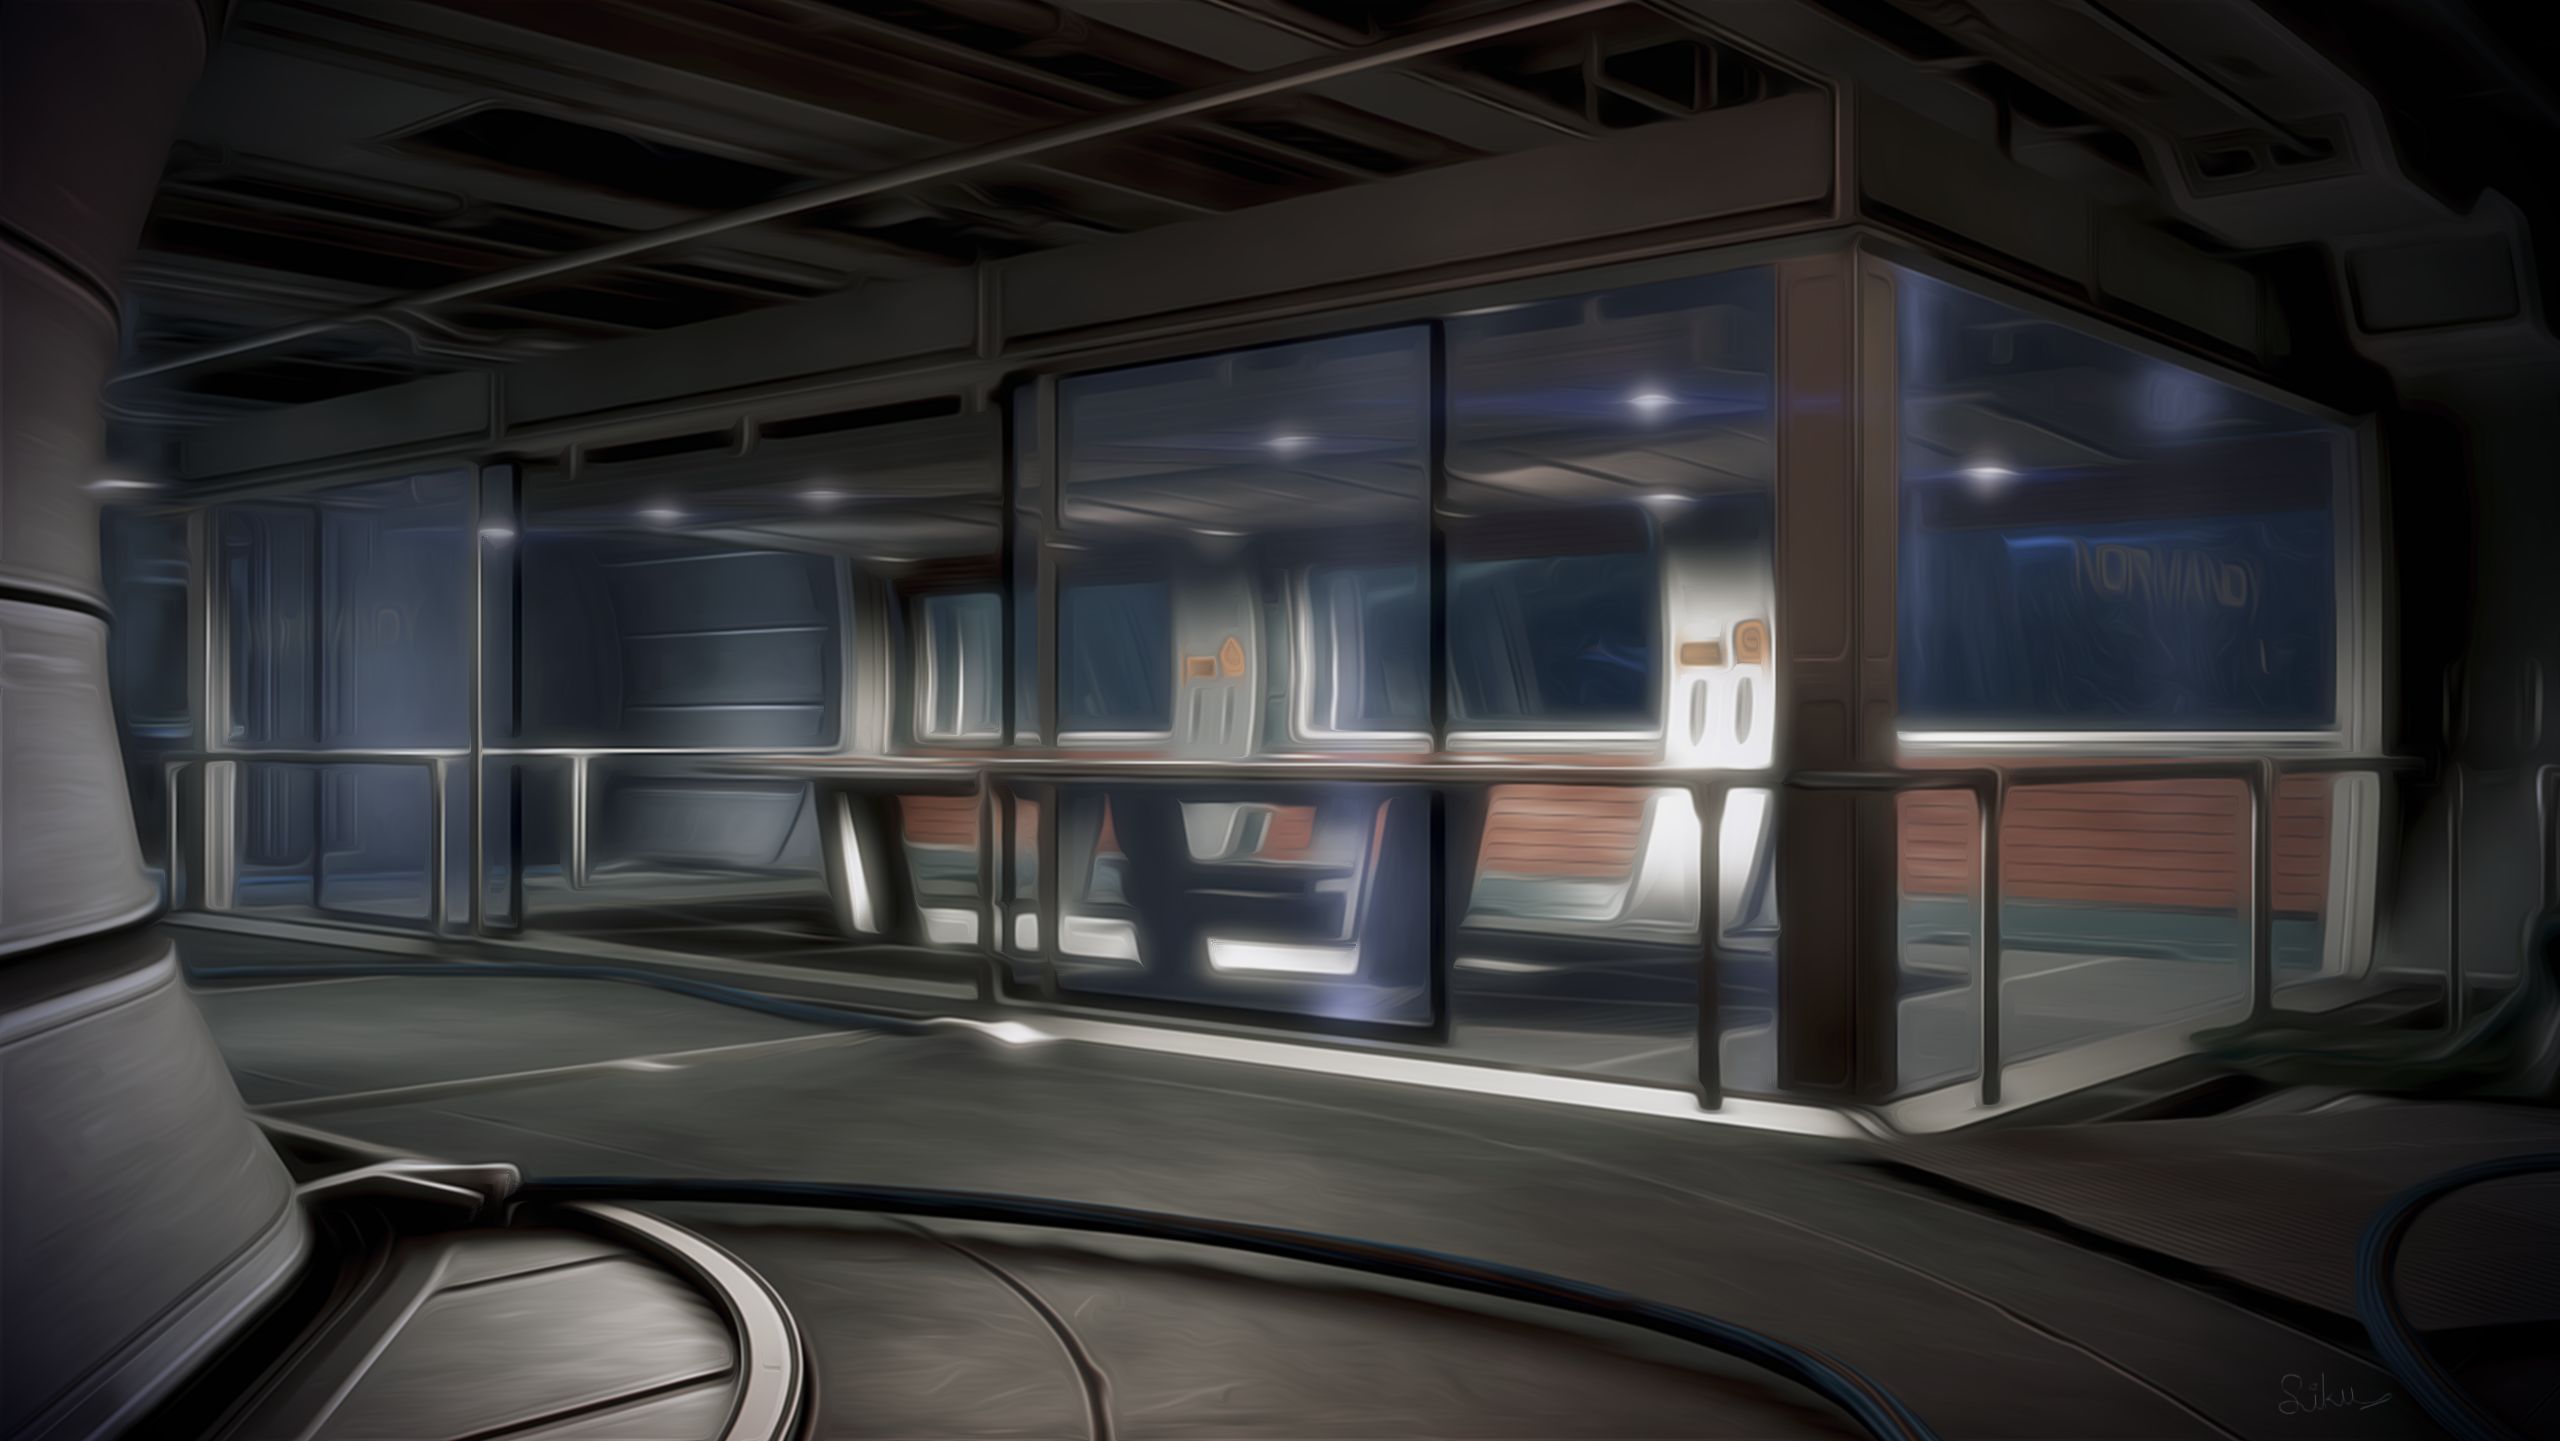 Descarga gratuita de fondo de pantalla para móvil de Mass Effect, Videojuego, Mass Effect 3.